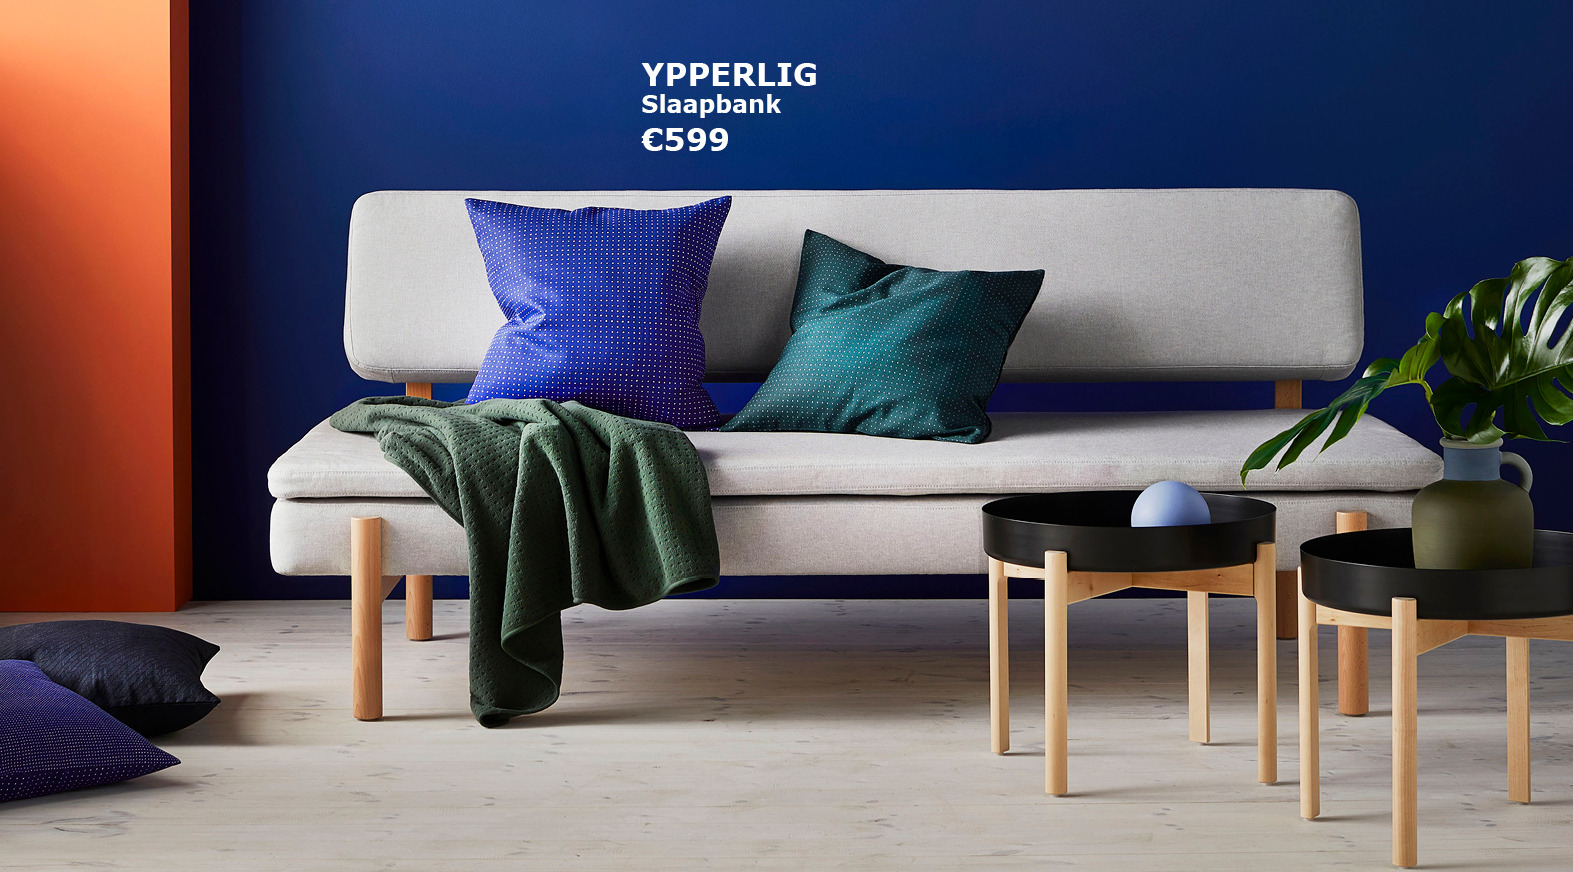 Margaret Mitchell bus spiraal Ontdek nu ook Deens design bij IKEA met de nieuwe YPPERLIG collectie